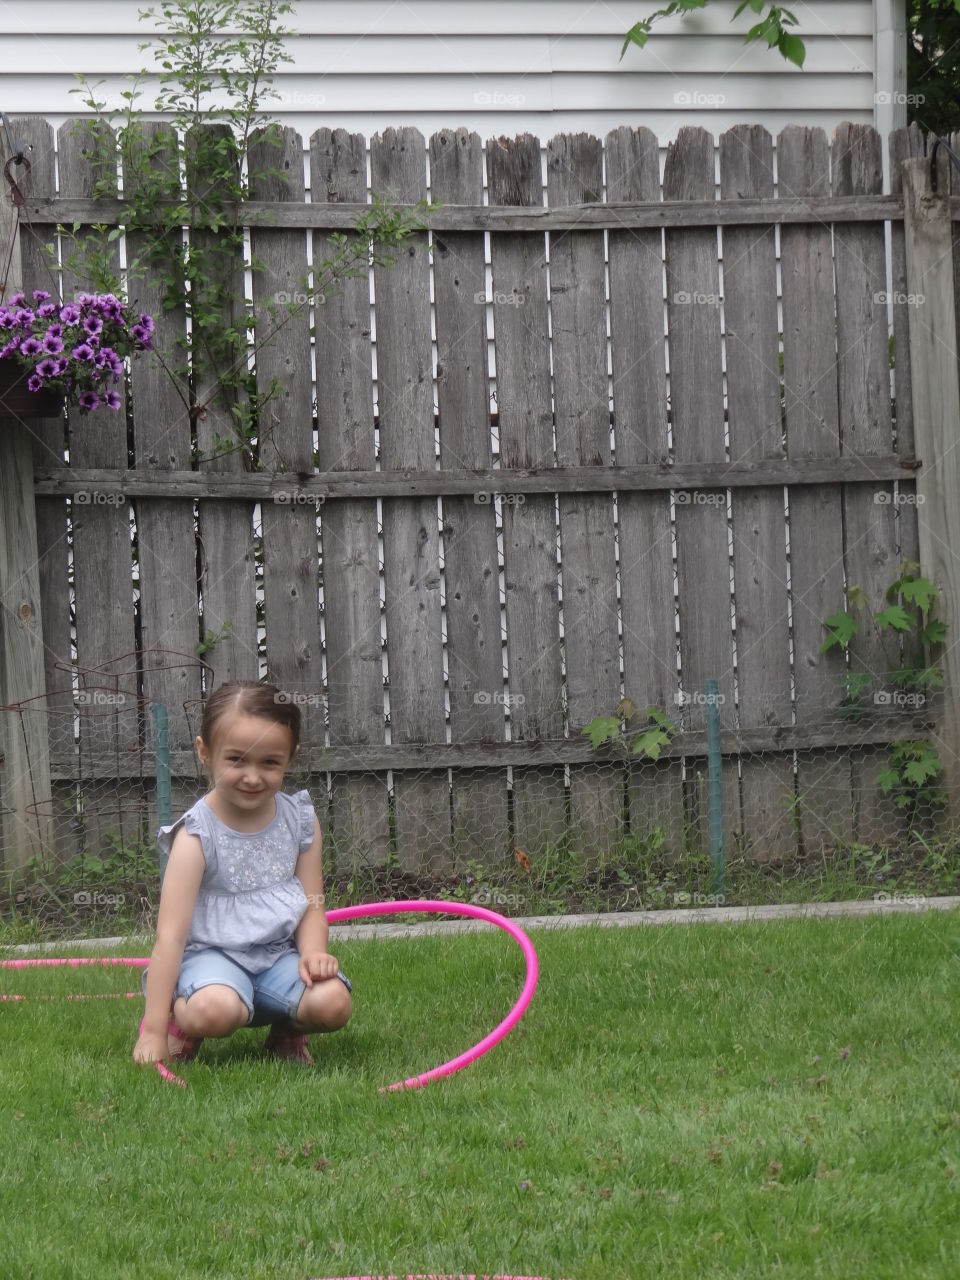 Hula Hoop Baby. Girl, attempting to hula hoop